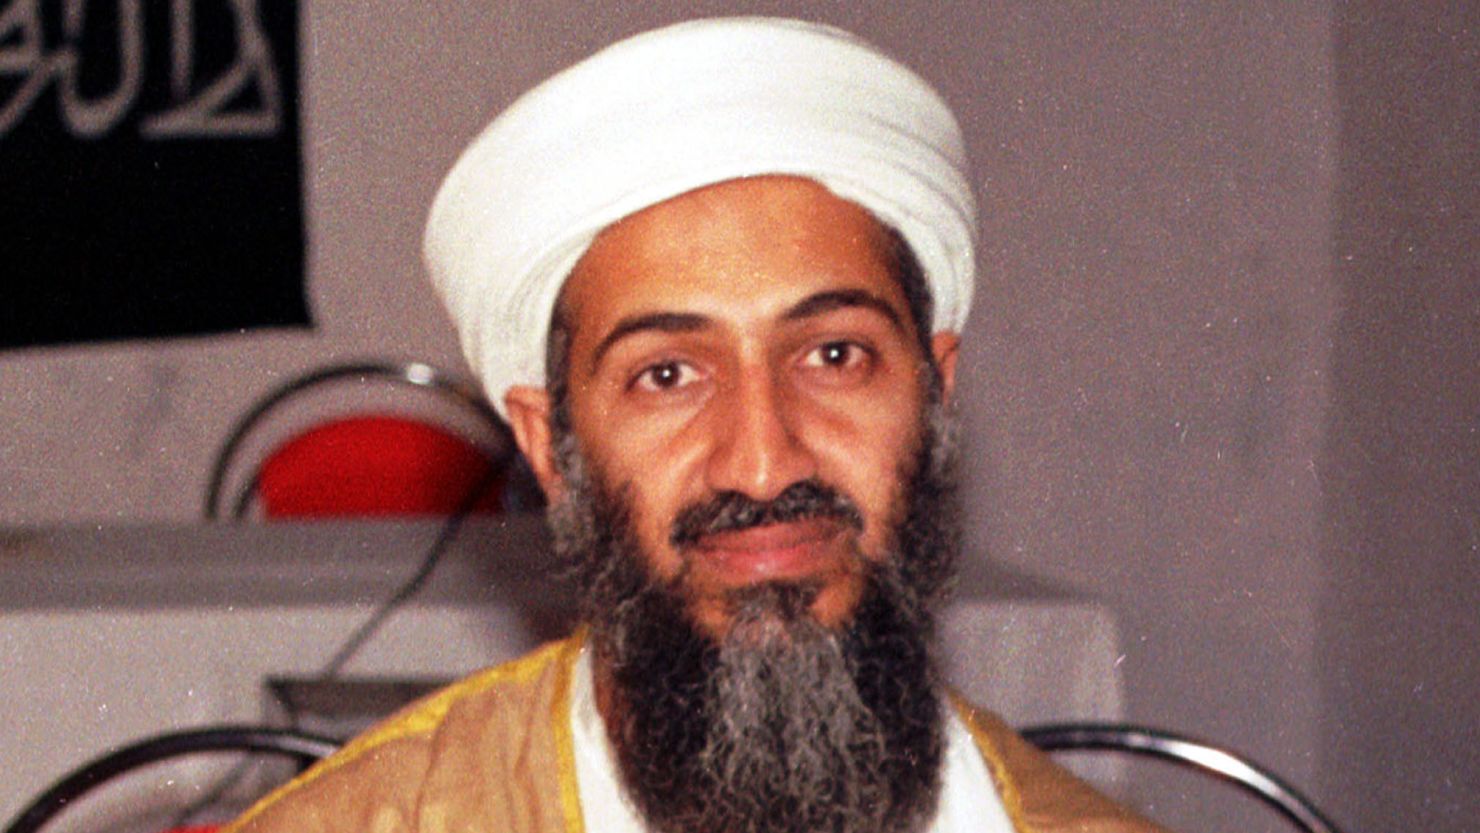 Court considers demand that U.S. release photos of bin Laden's body